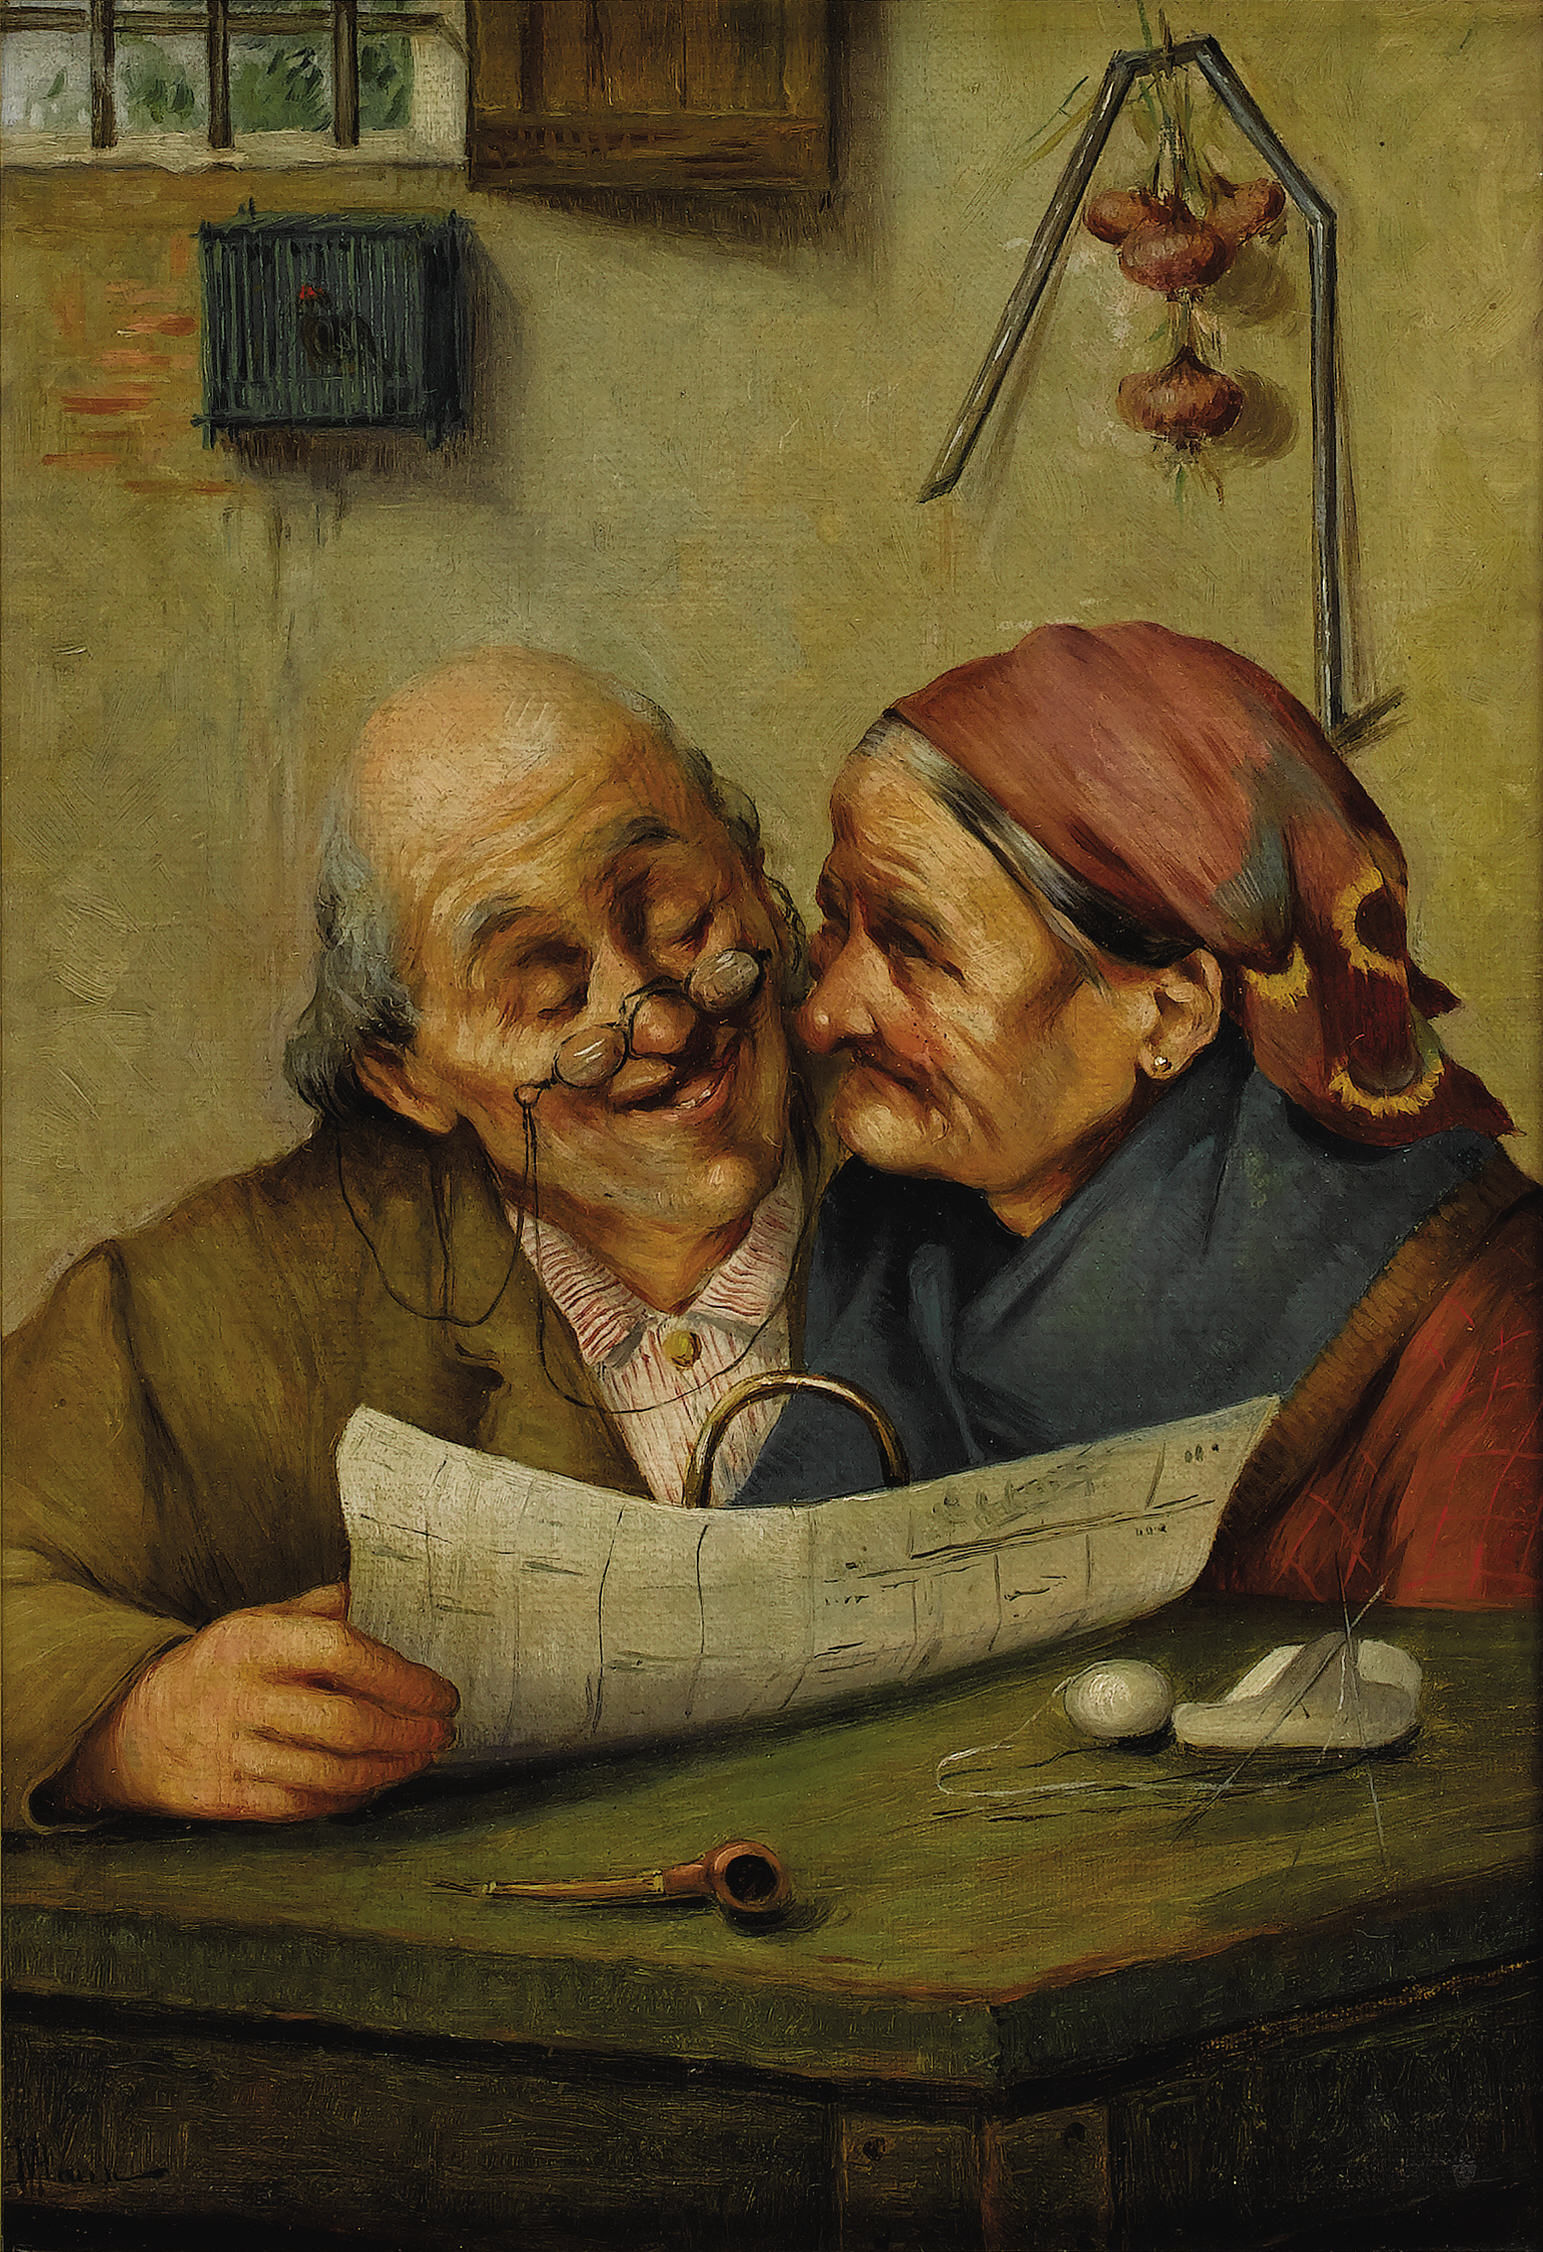 A Loving Couple by J.M. Baur